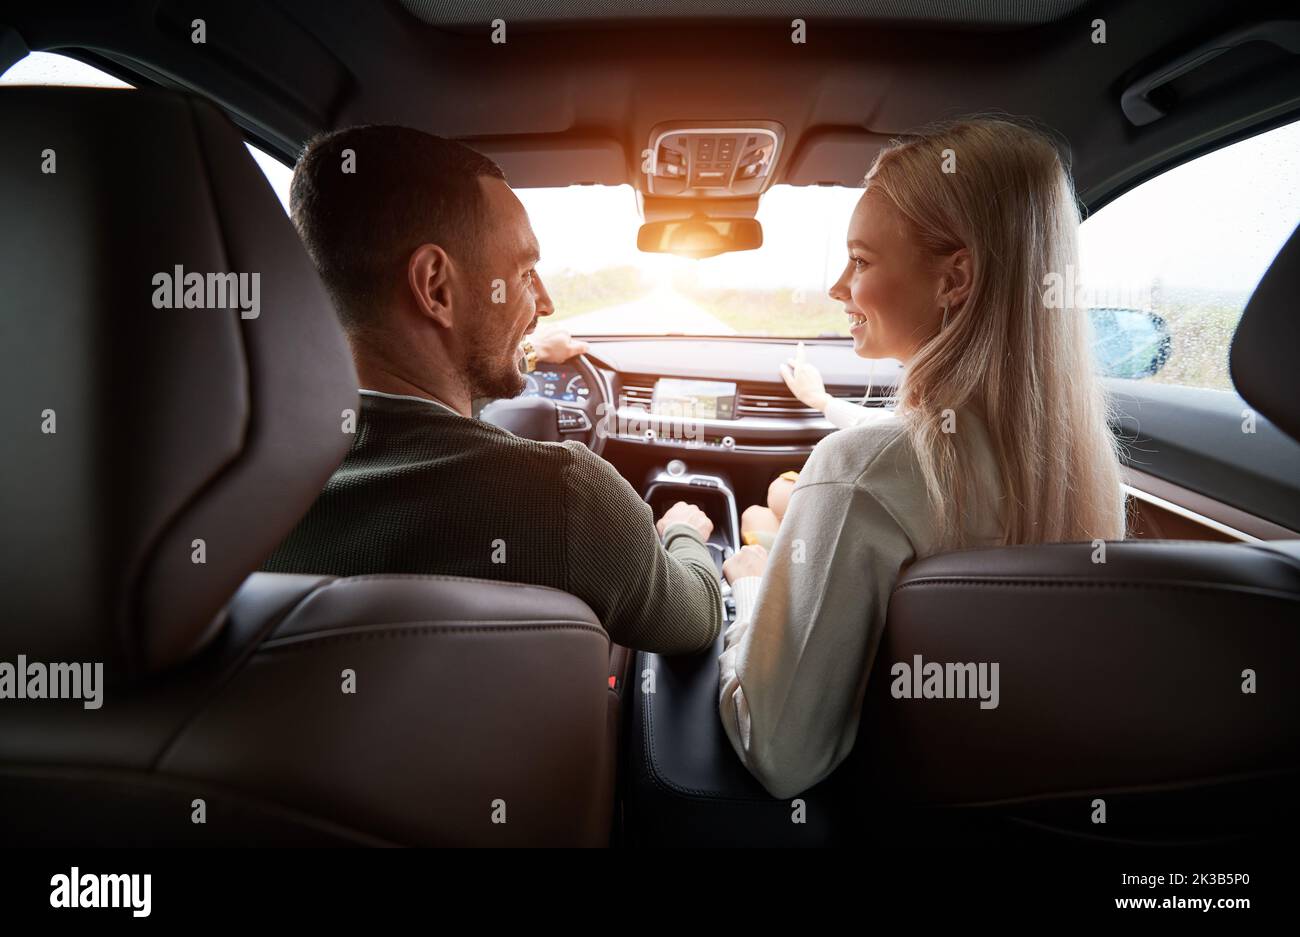 Vue arrière de deux personnes à l'intérieur d'une voiture confortable. Joyeux conducteur et blonde féminine gaie sur le siège avant, souriant sincèrement et regardant l'un l'autre. Atmosphère agréable pendant le voyage en voiture. Banque D'Images